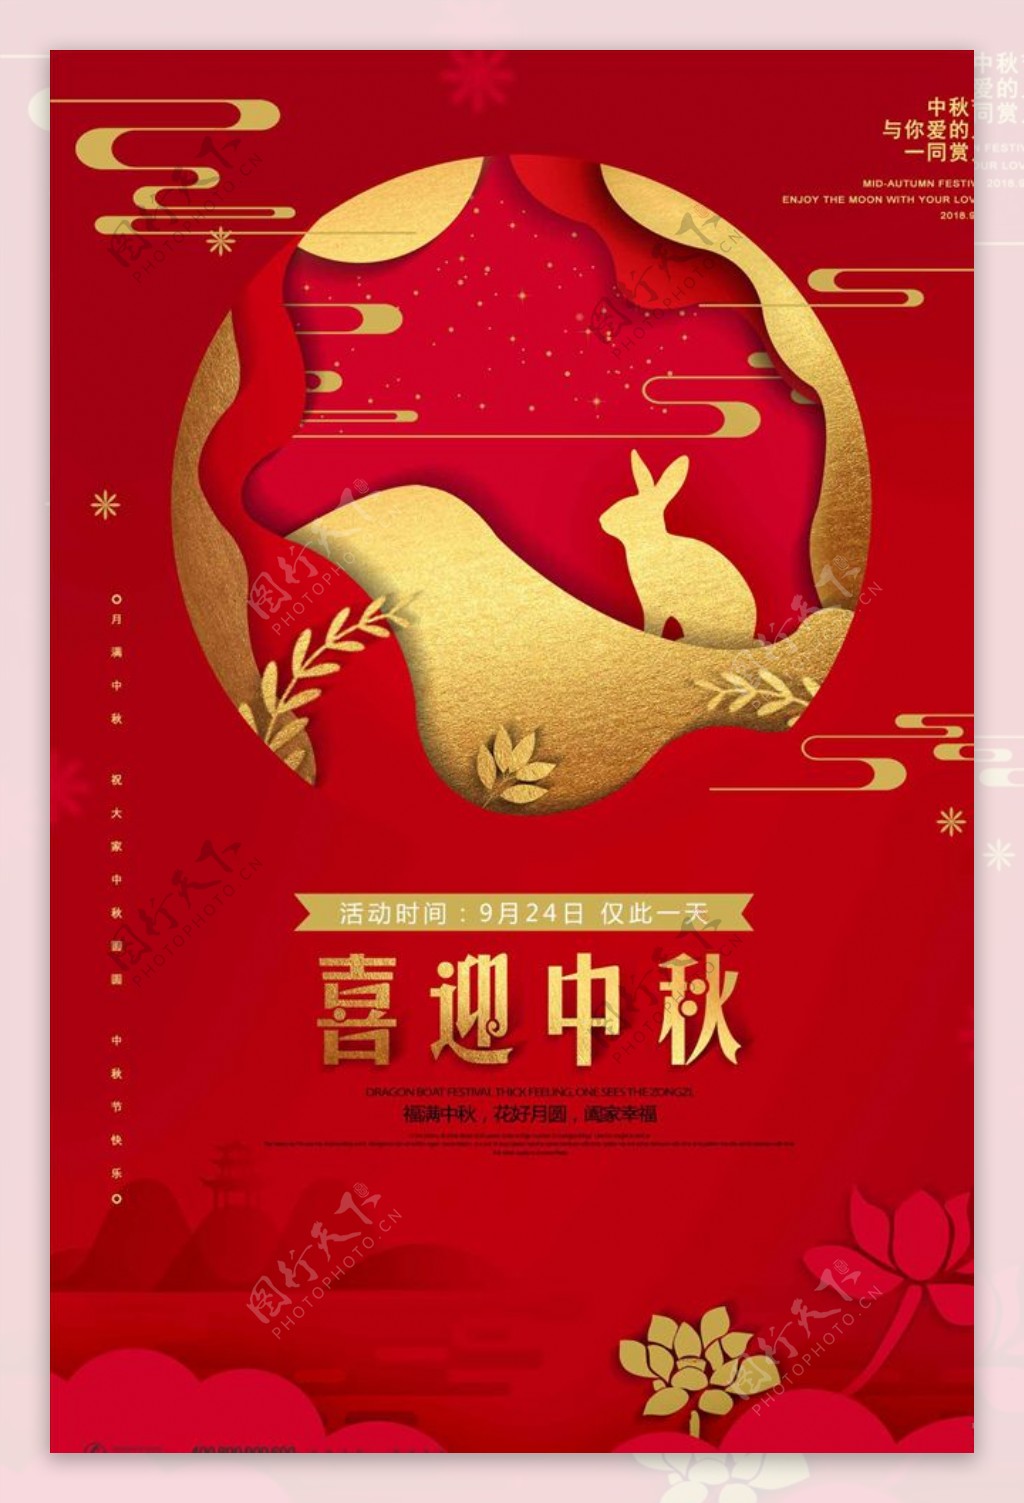 大气中式喜迎中秋中秋节宣传海报